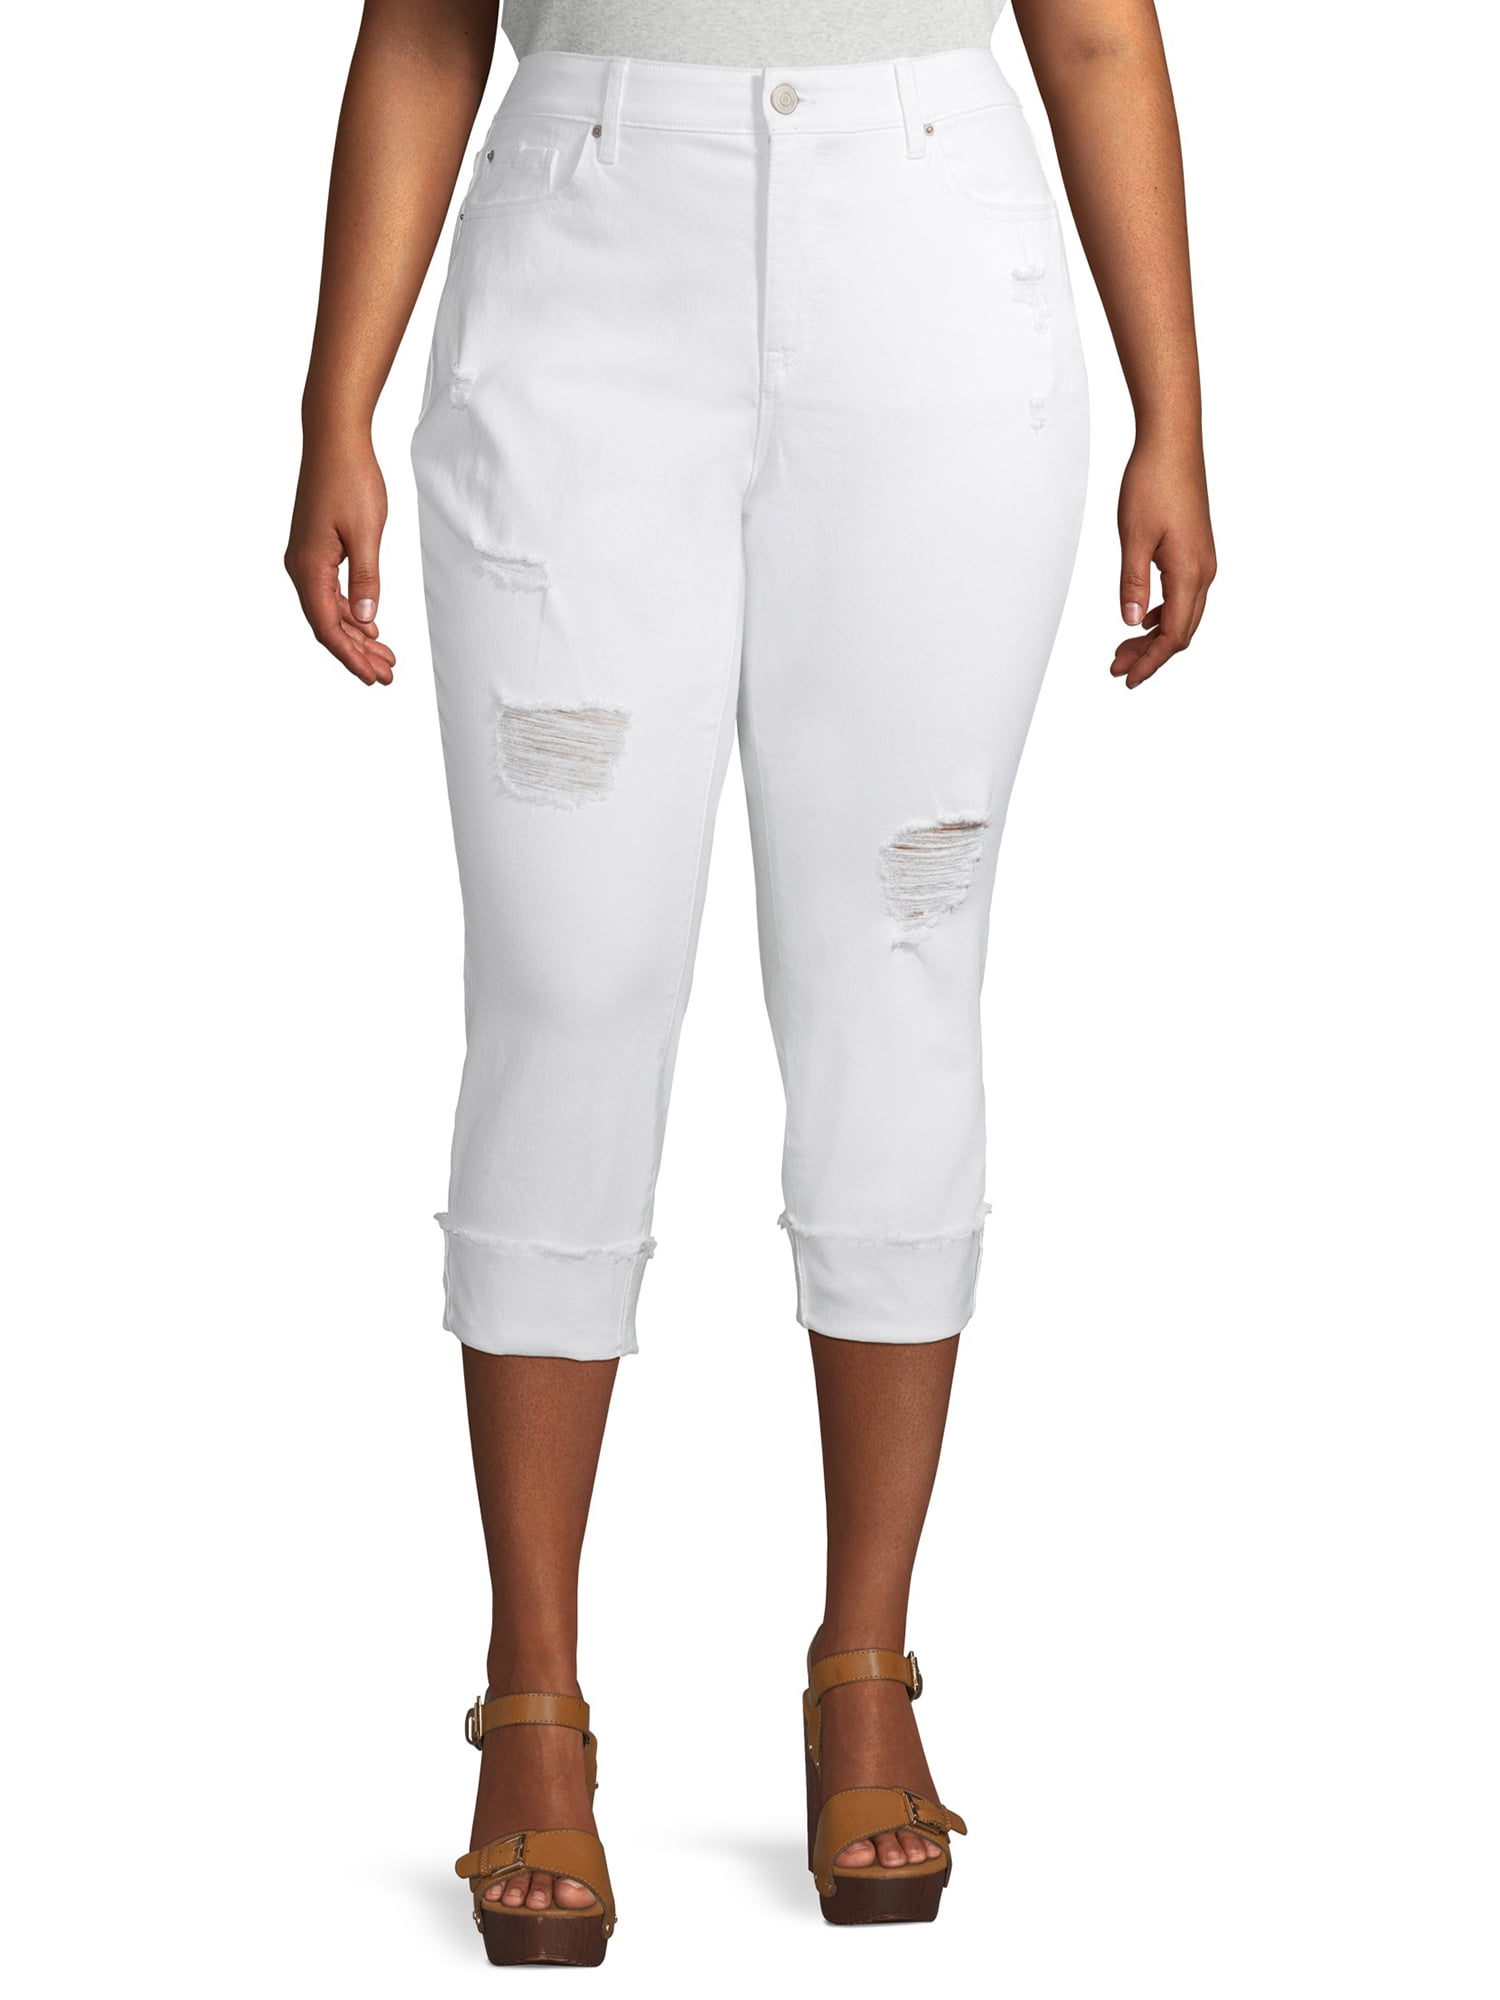 Terra & Sky White Capri Pants for Women